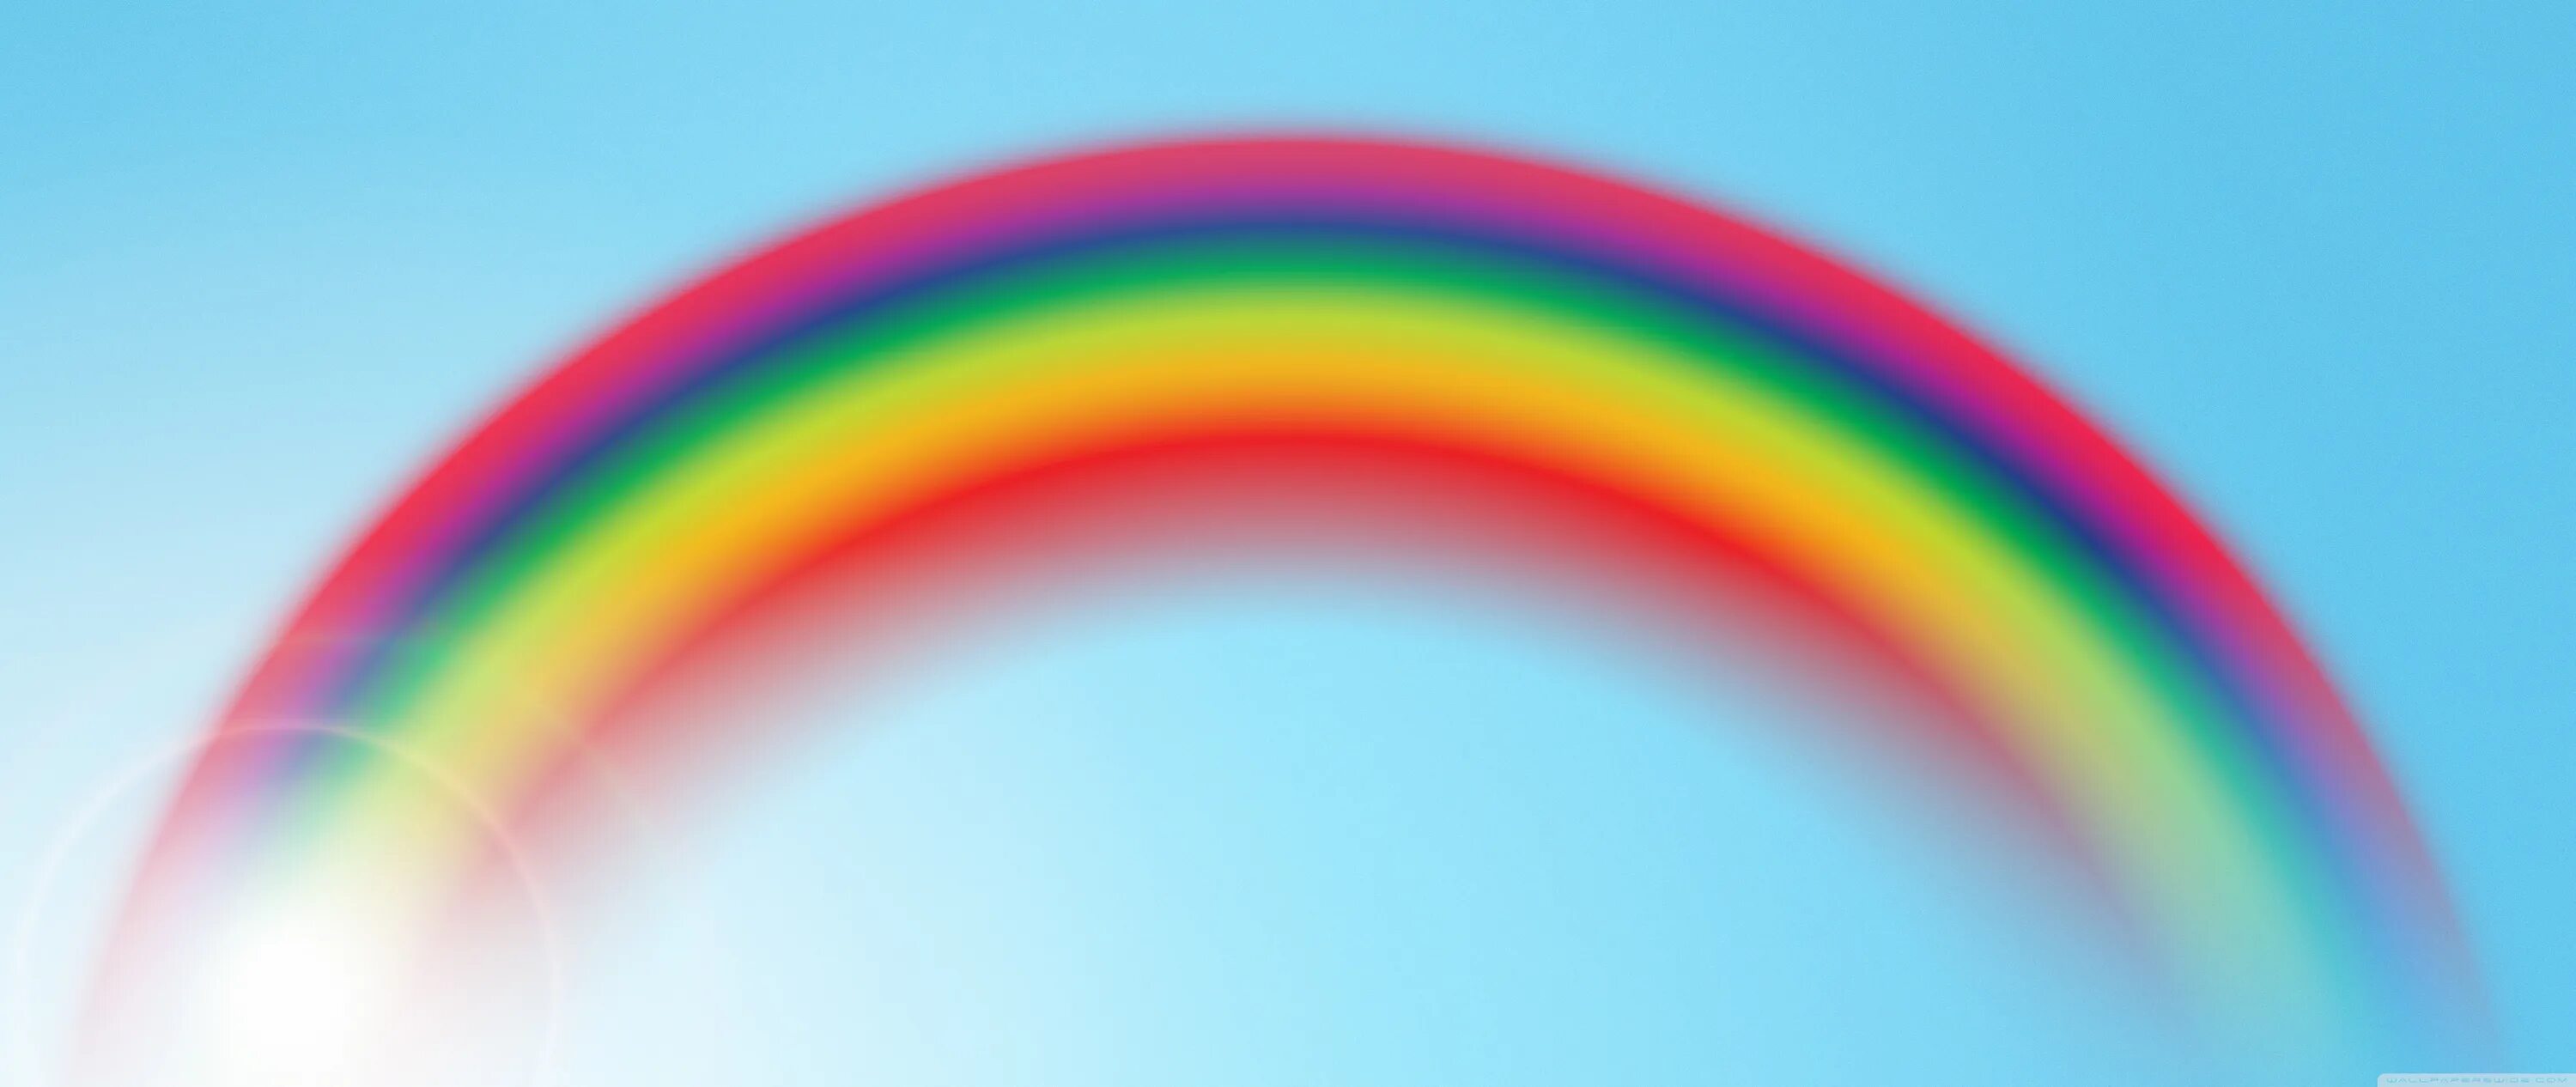 Rainbow 3 animals. Радужный фон. 3 Радуги. Три радуги одновременно. Детский фон с радугой для фотошопа.